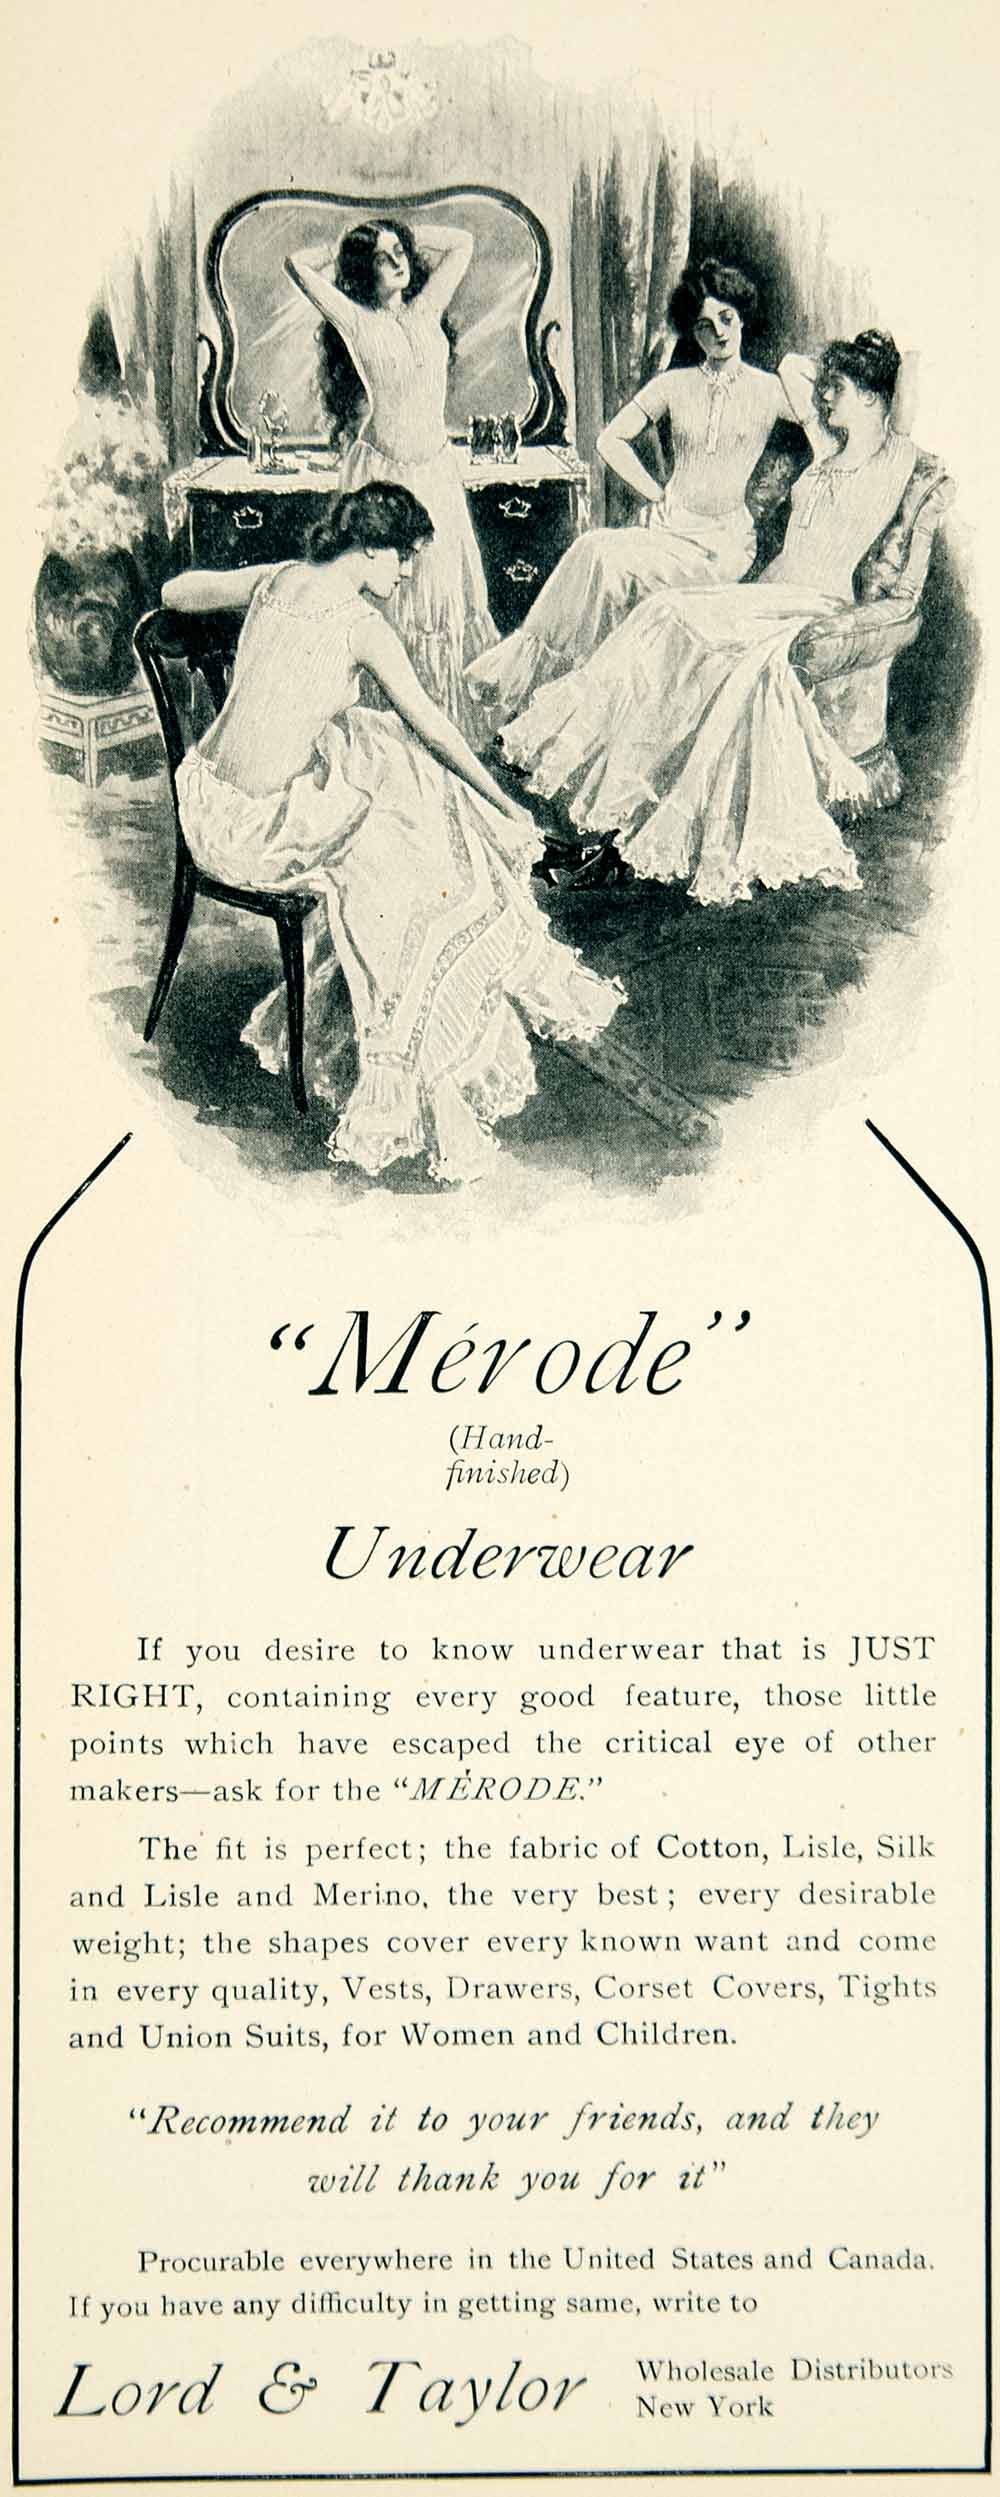 1905 Ad Lord & Taylor Merode Underwear Womens Clothing Edwardian Fashion YLF1